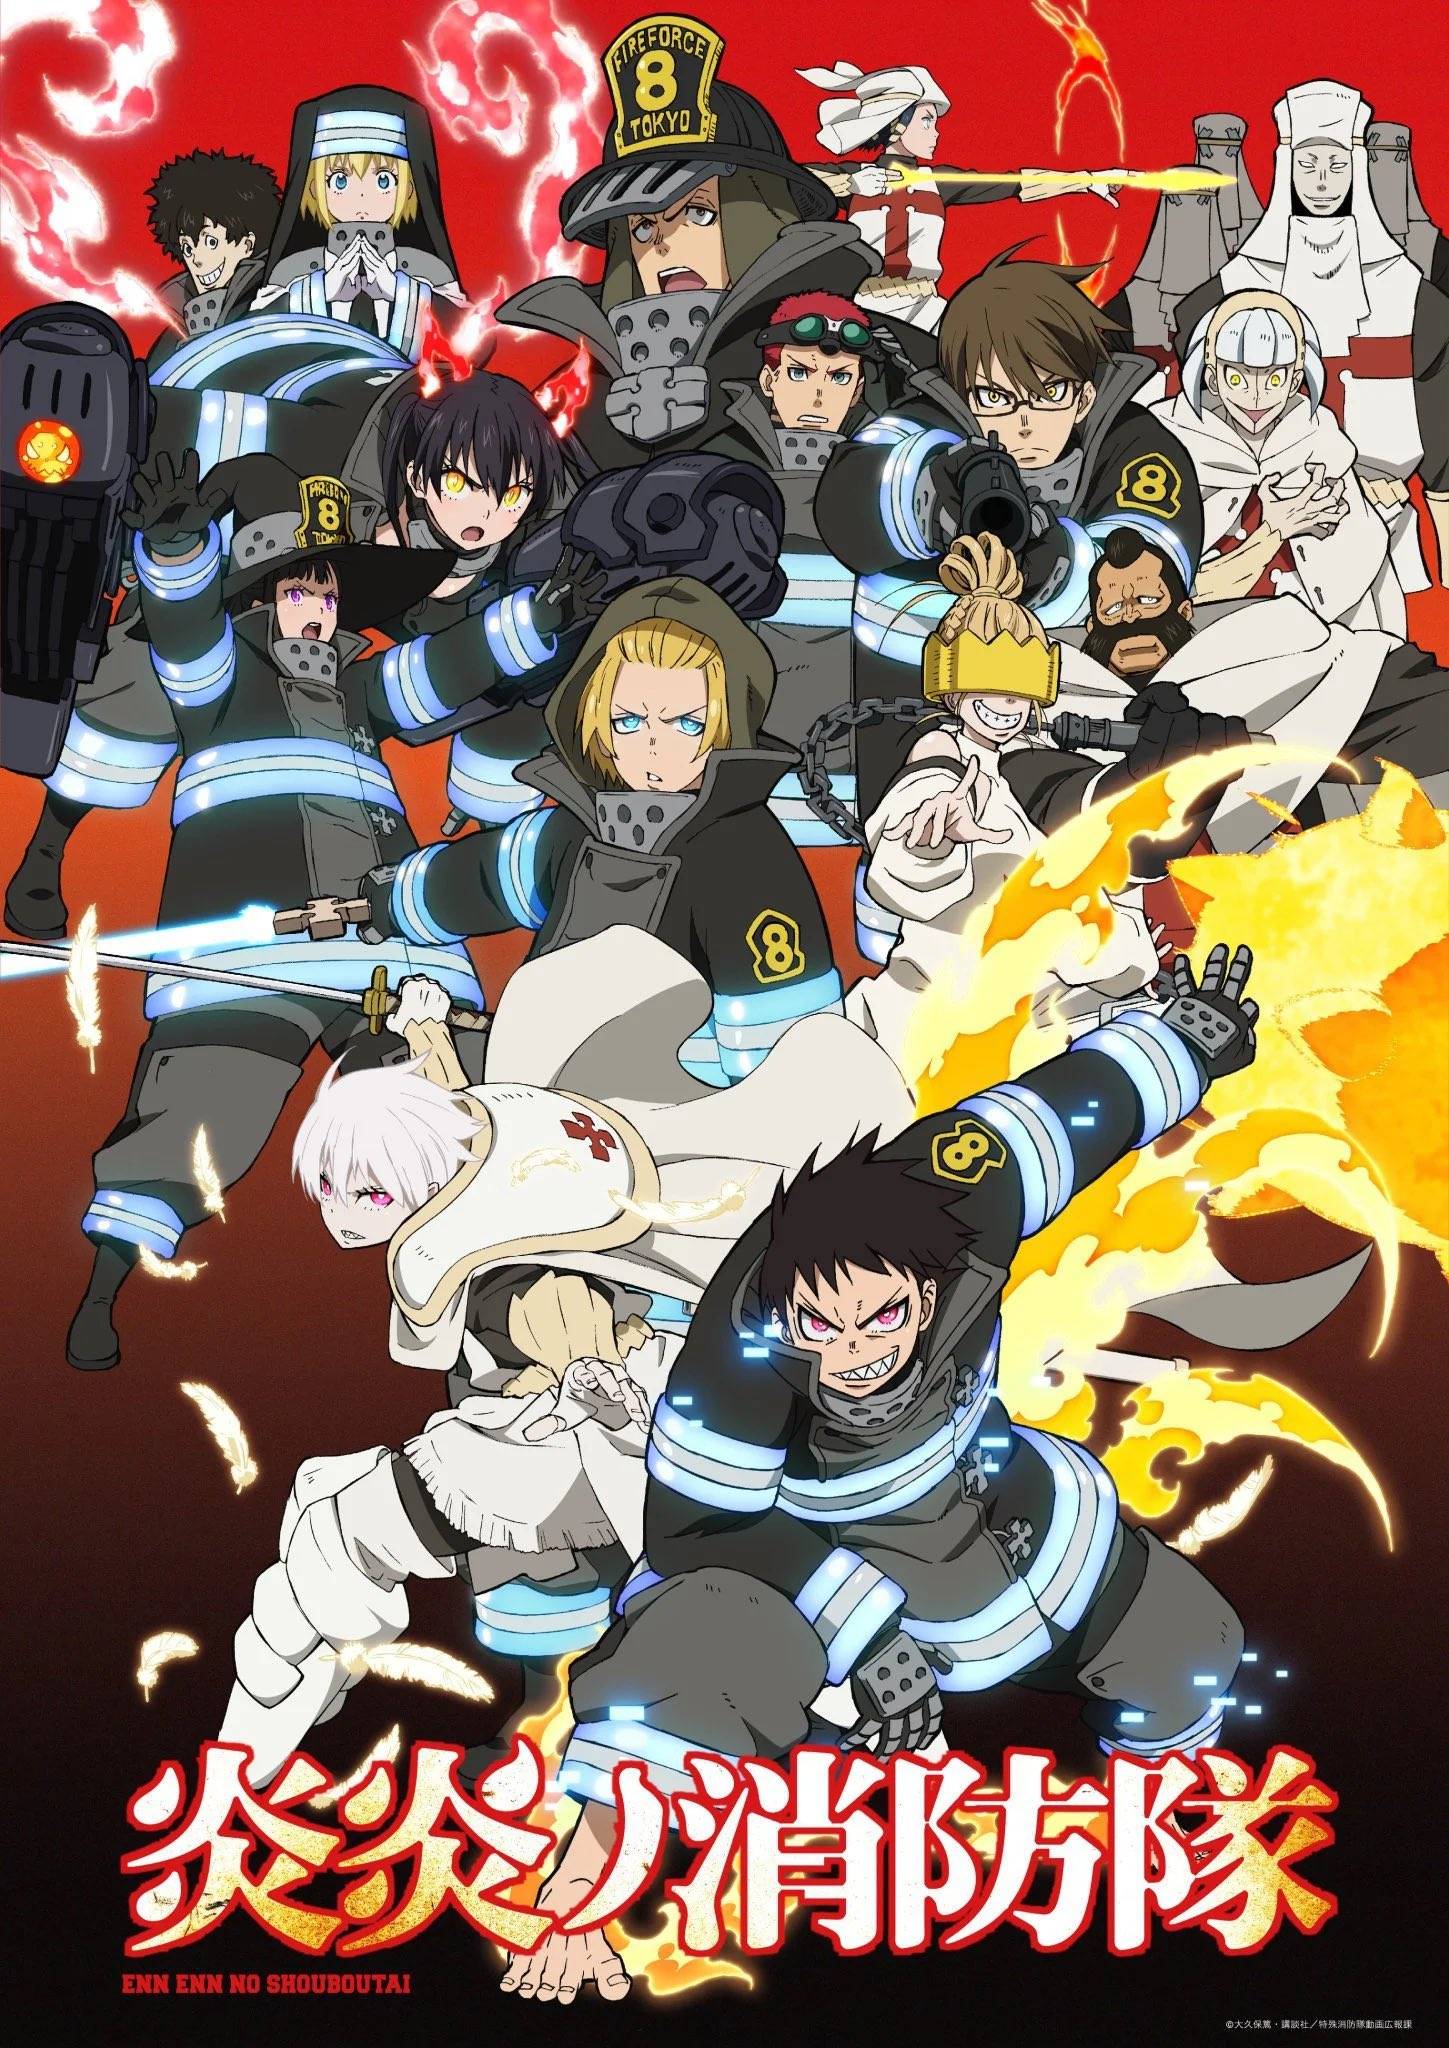 Terceira temporada do anime Fire Force é anunciada - NerdBunker